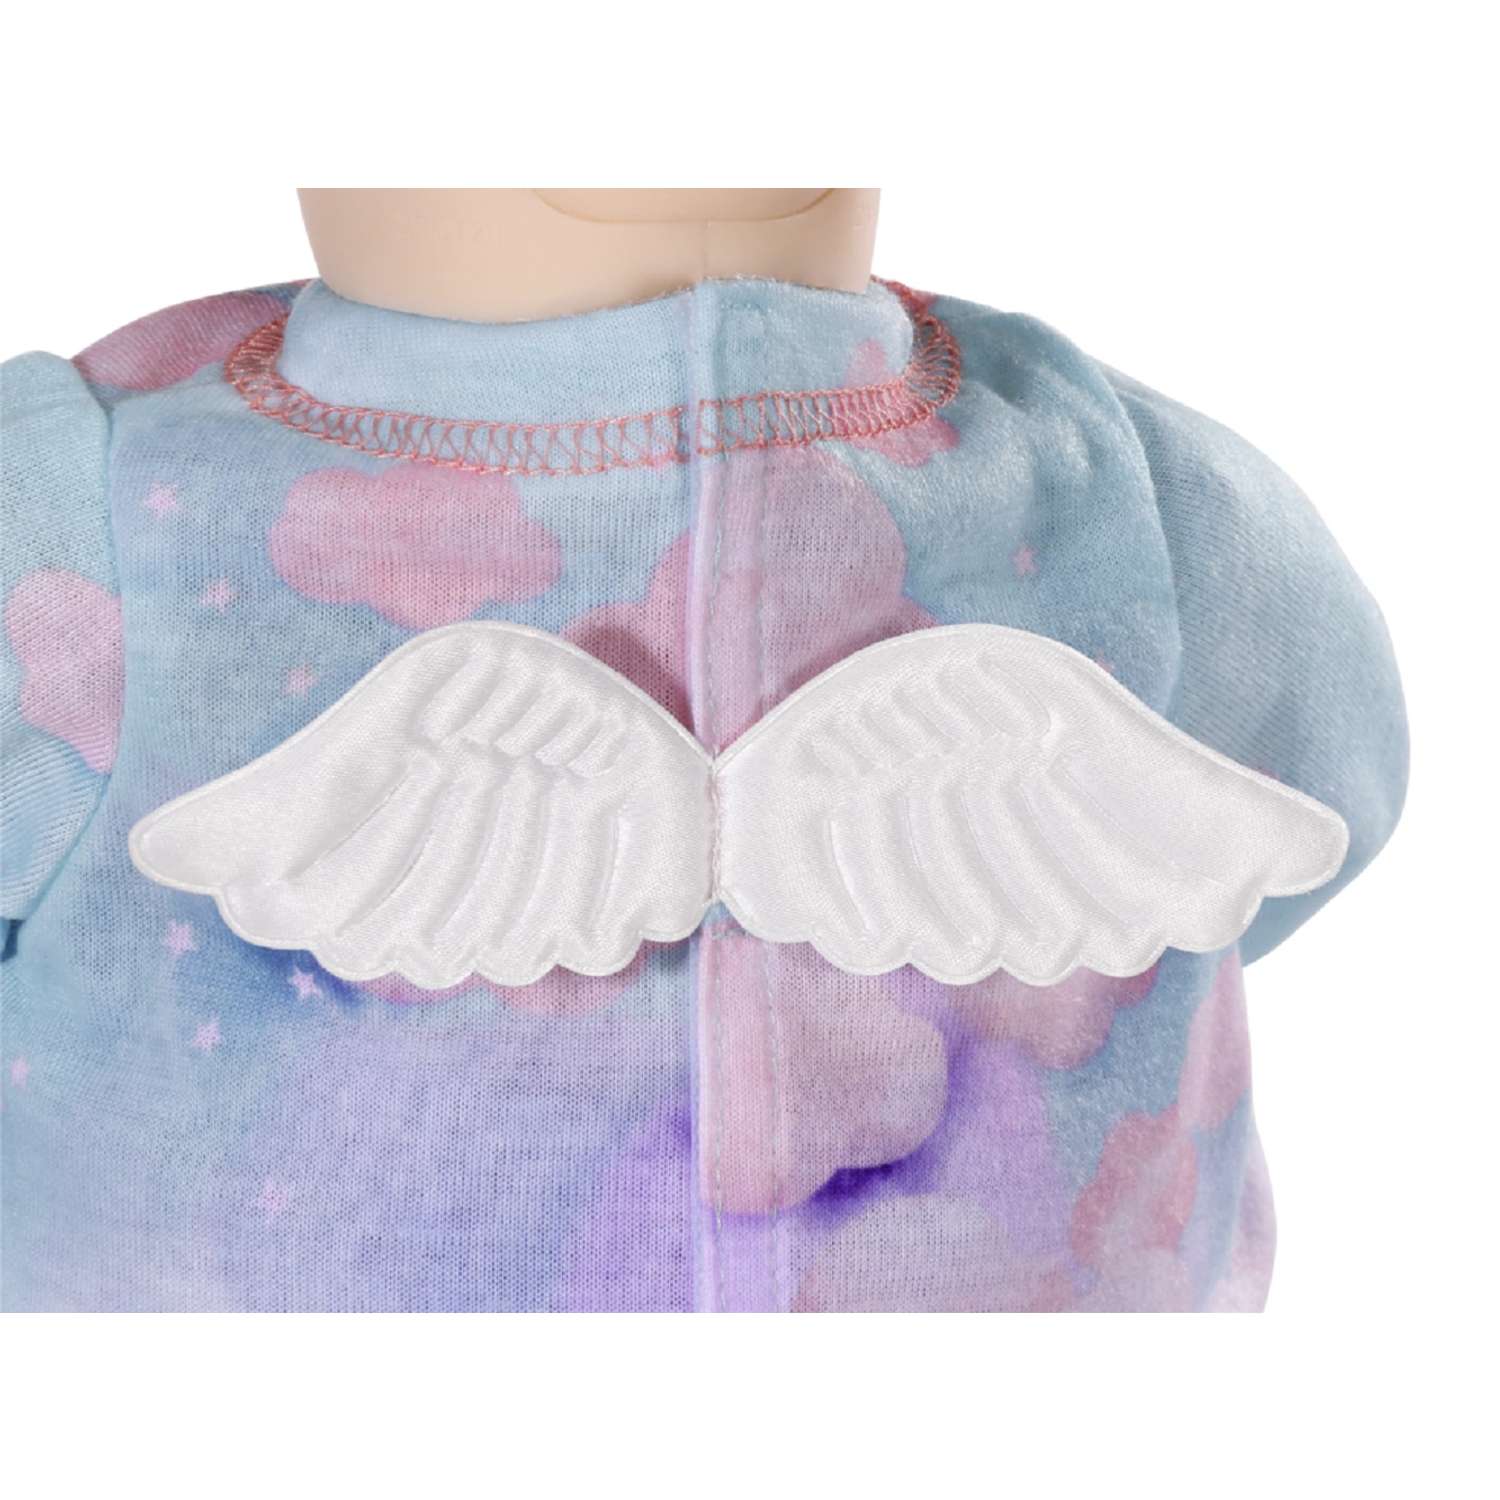 Набор одежды для куклы Zapf Creation Baby Annabell для сладких снов 703-199 - фото 2